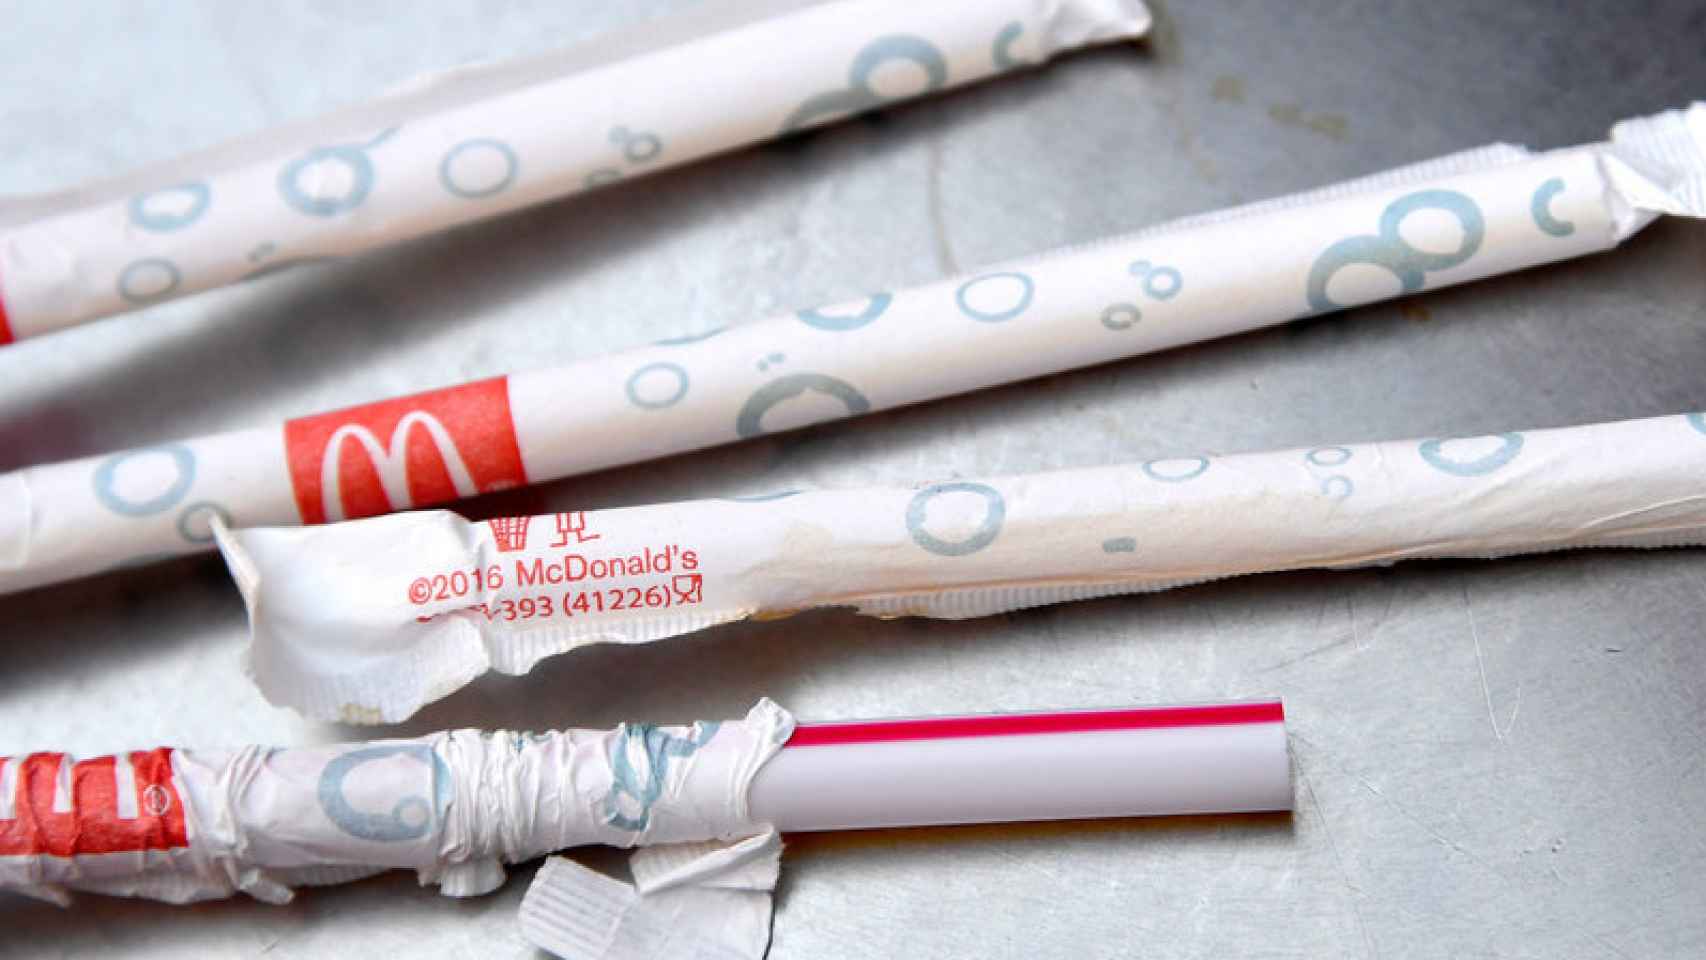 Las pajitas de papel también contaminan. ¿Y ahora qué?